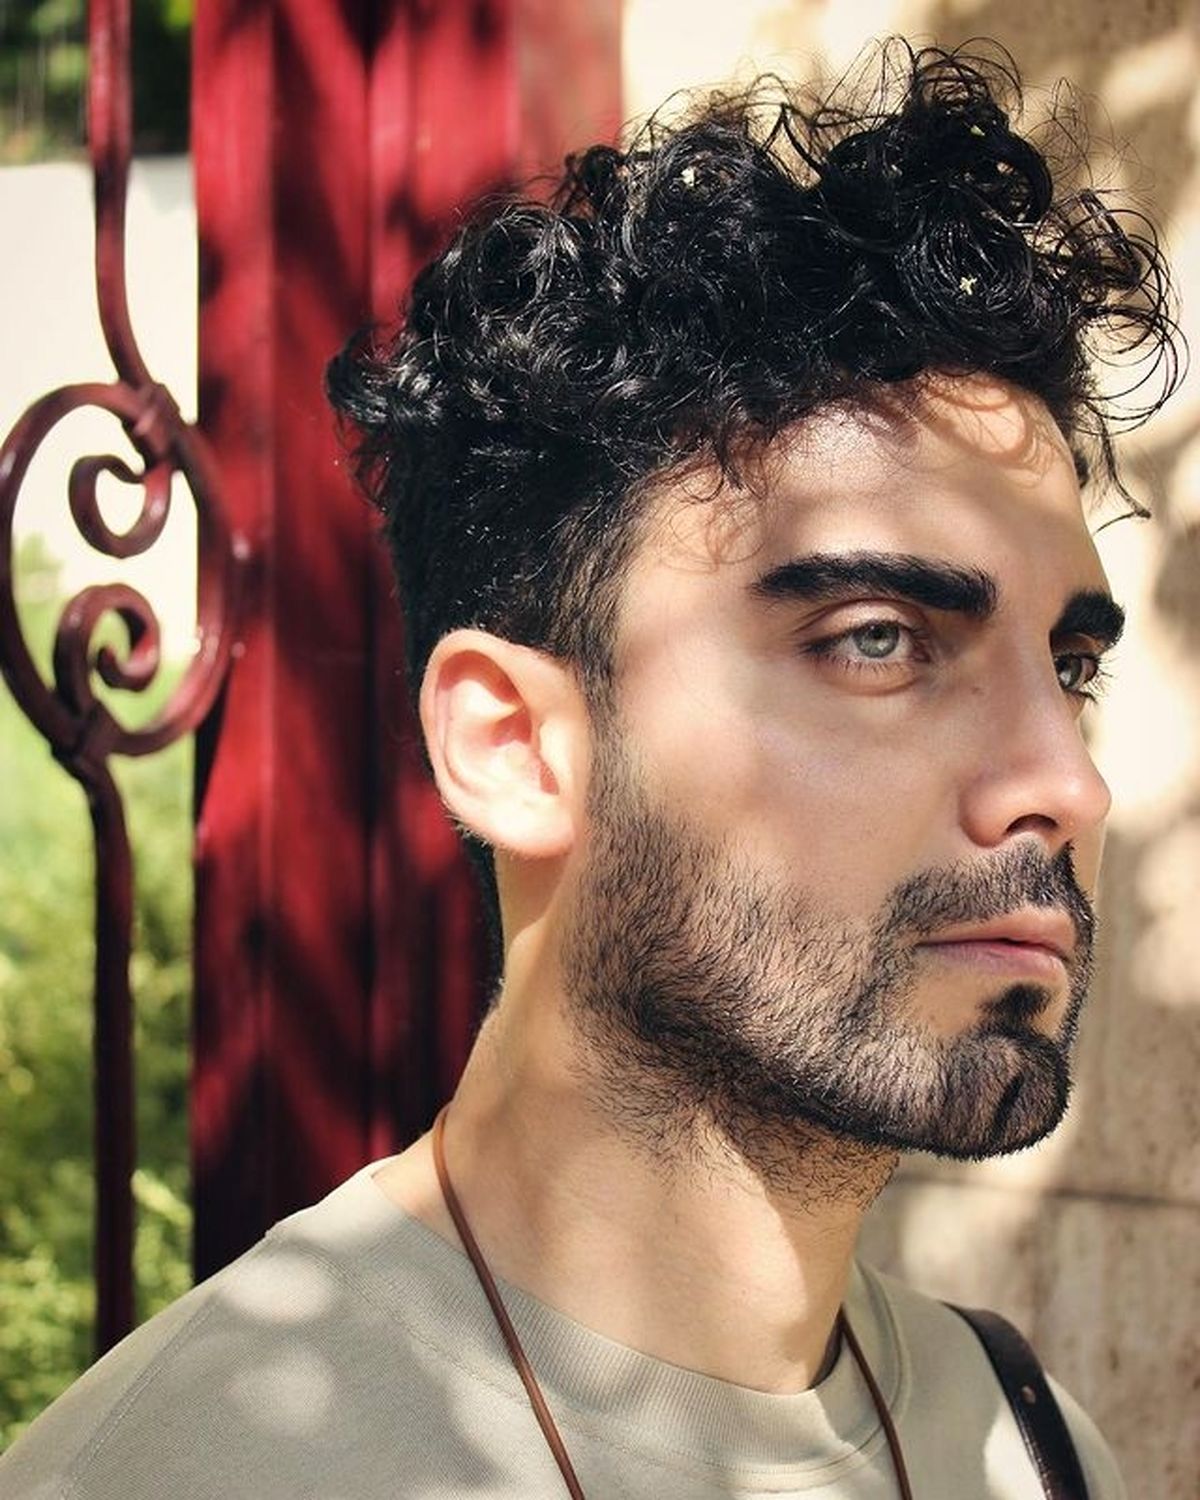 «محمد صادقی» بازیگر نقش پیمان در «سریال افرا» کیست؟ + بیوگرافی و تصاویر